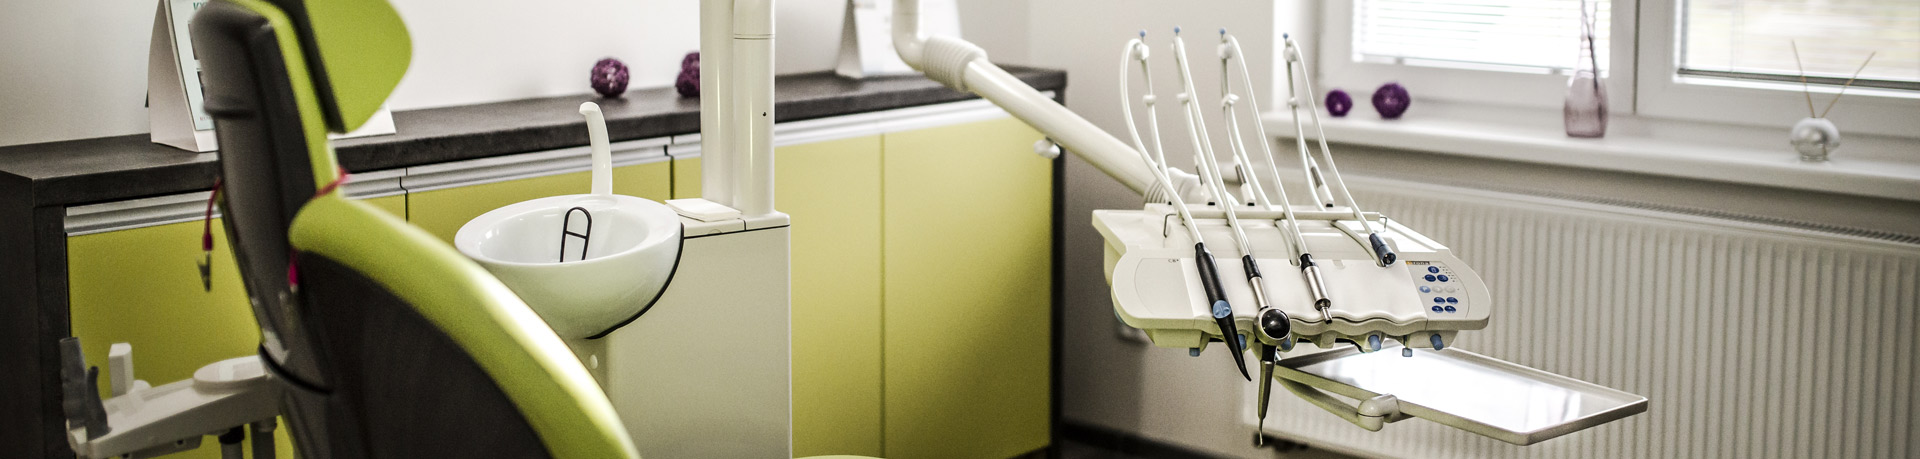 BB dent - zubn laborato ve Vesel nad Moravou